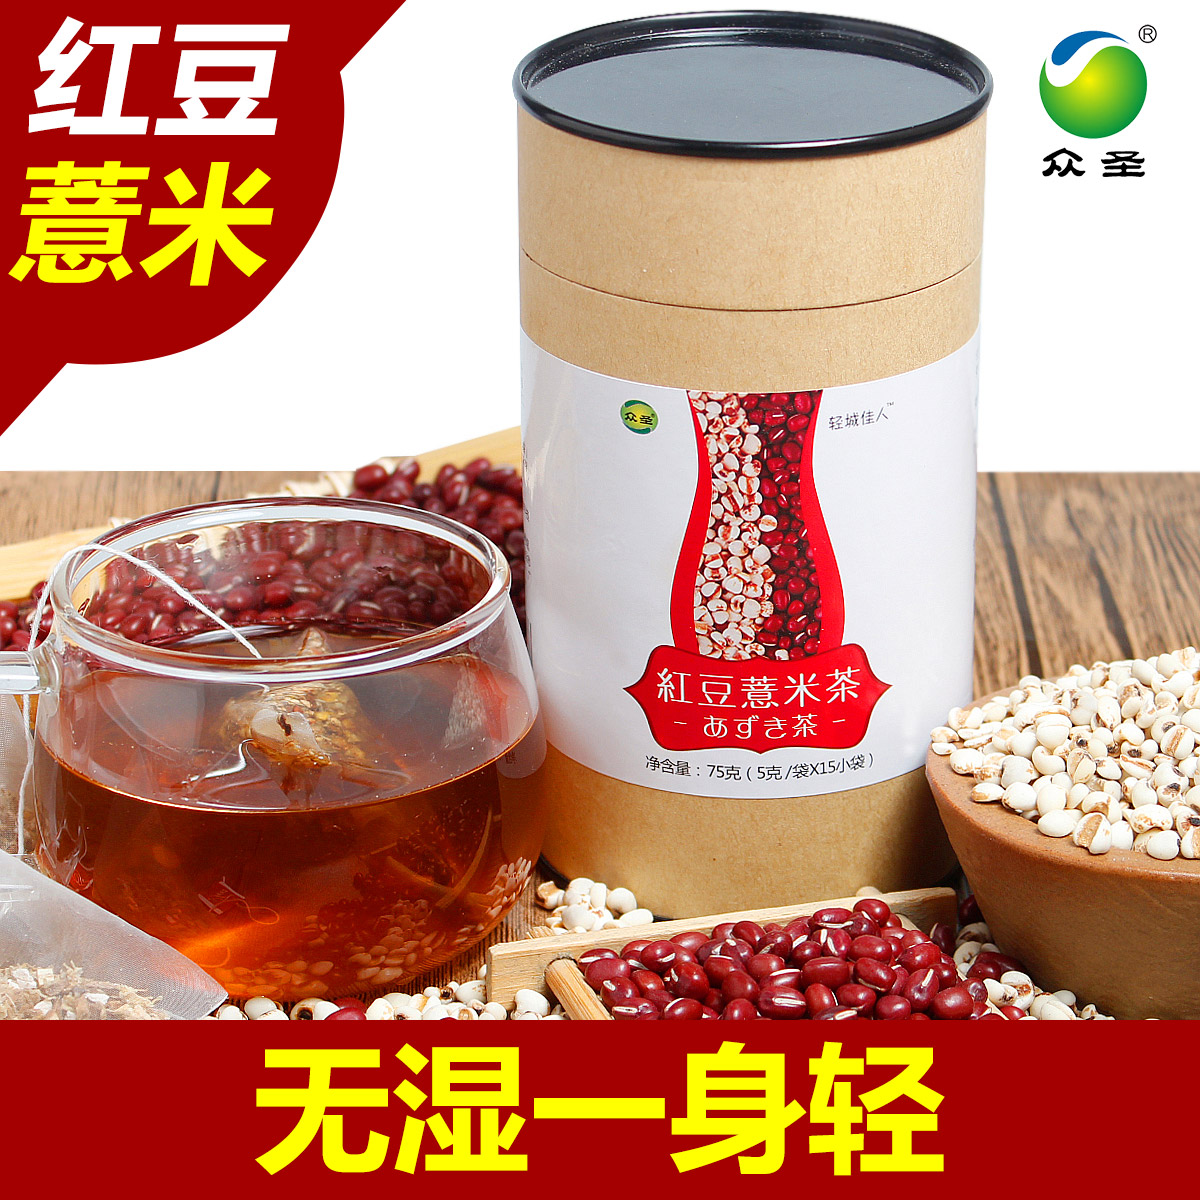 众圣红豆薏米茶 祛湿清湿消食健胃清肠肠胃不适去湿气湿热体质